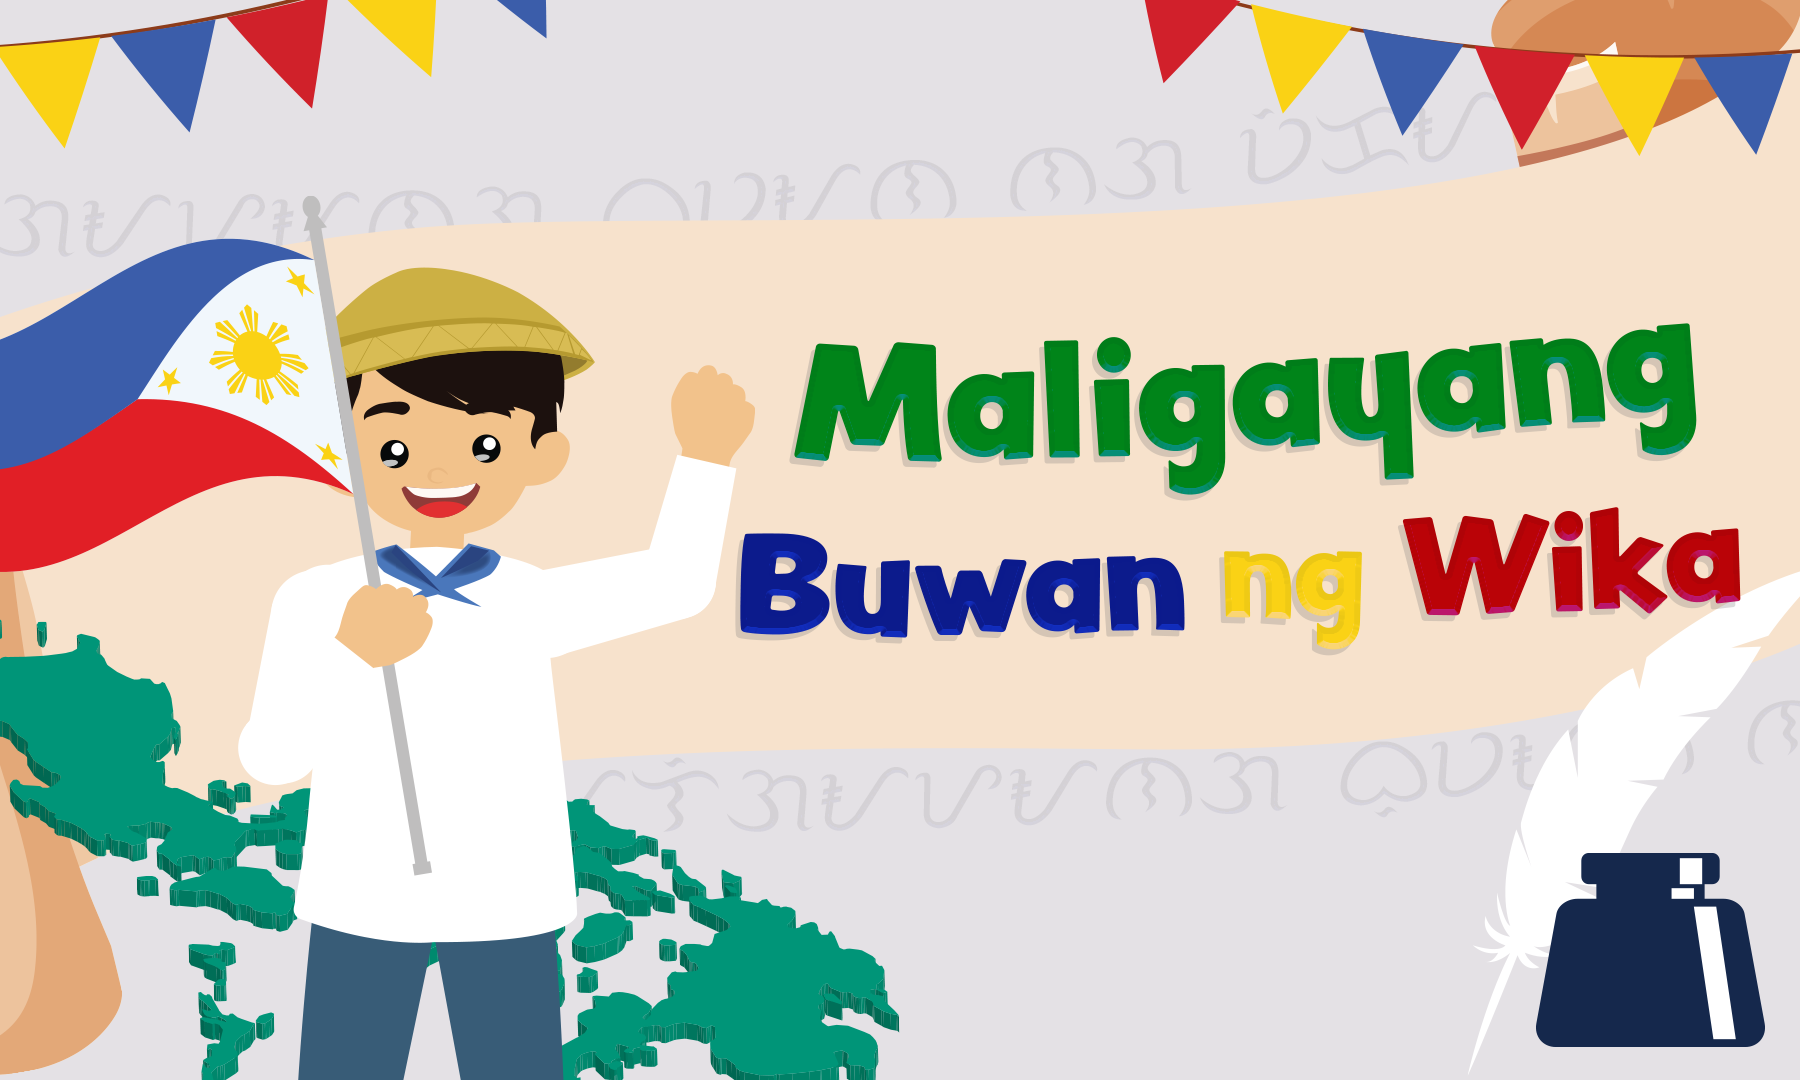 Celebrate Buwan ng Wika  Affordable House and Lot  Lumina Homes